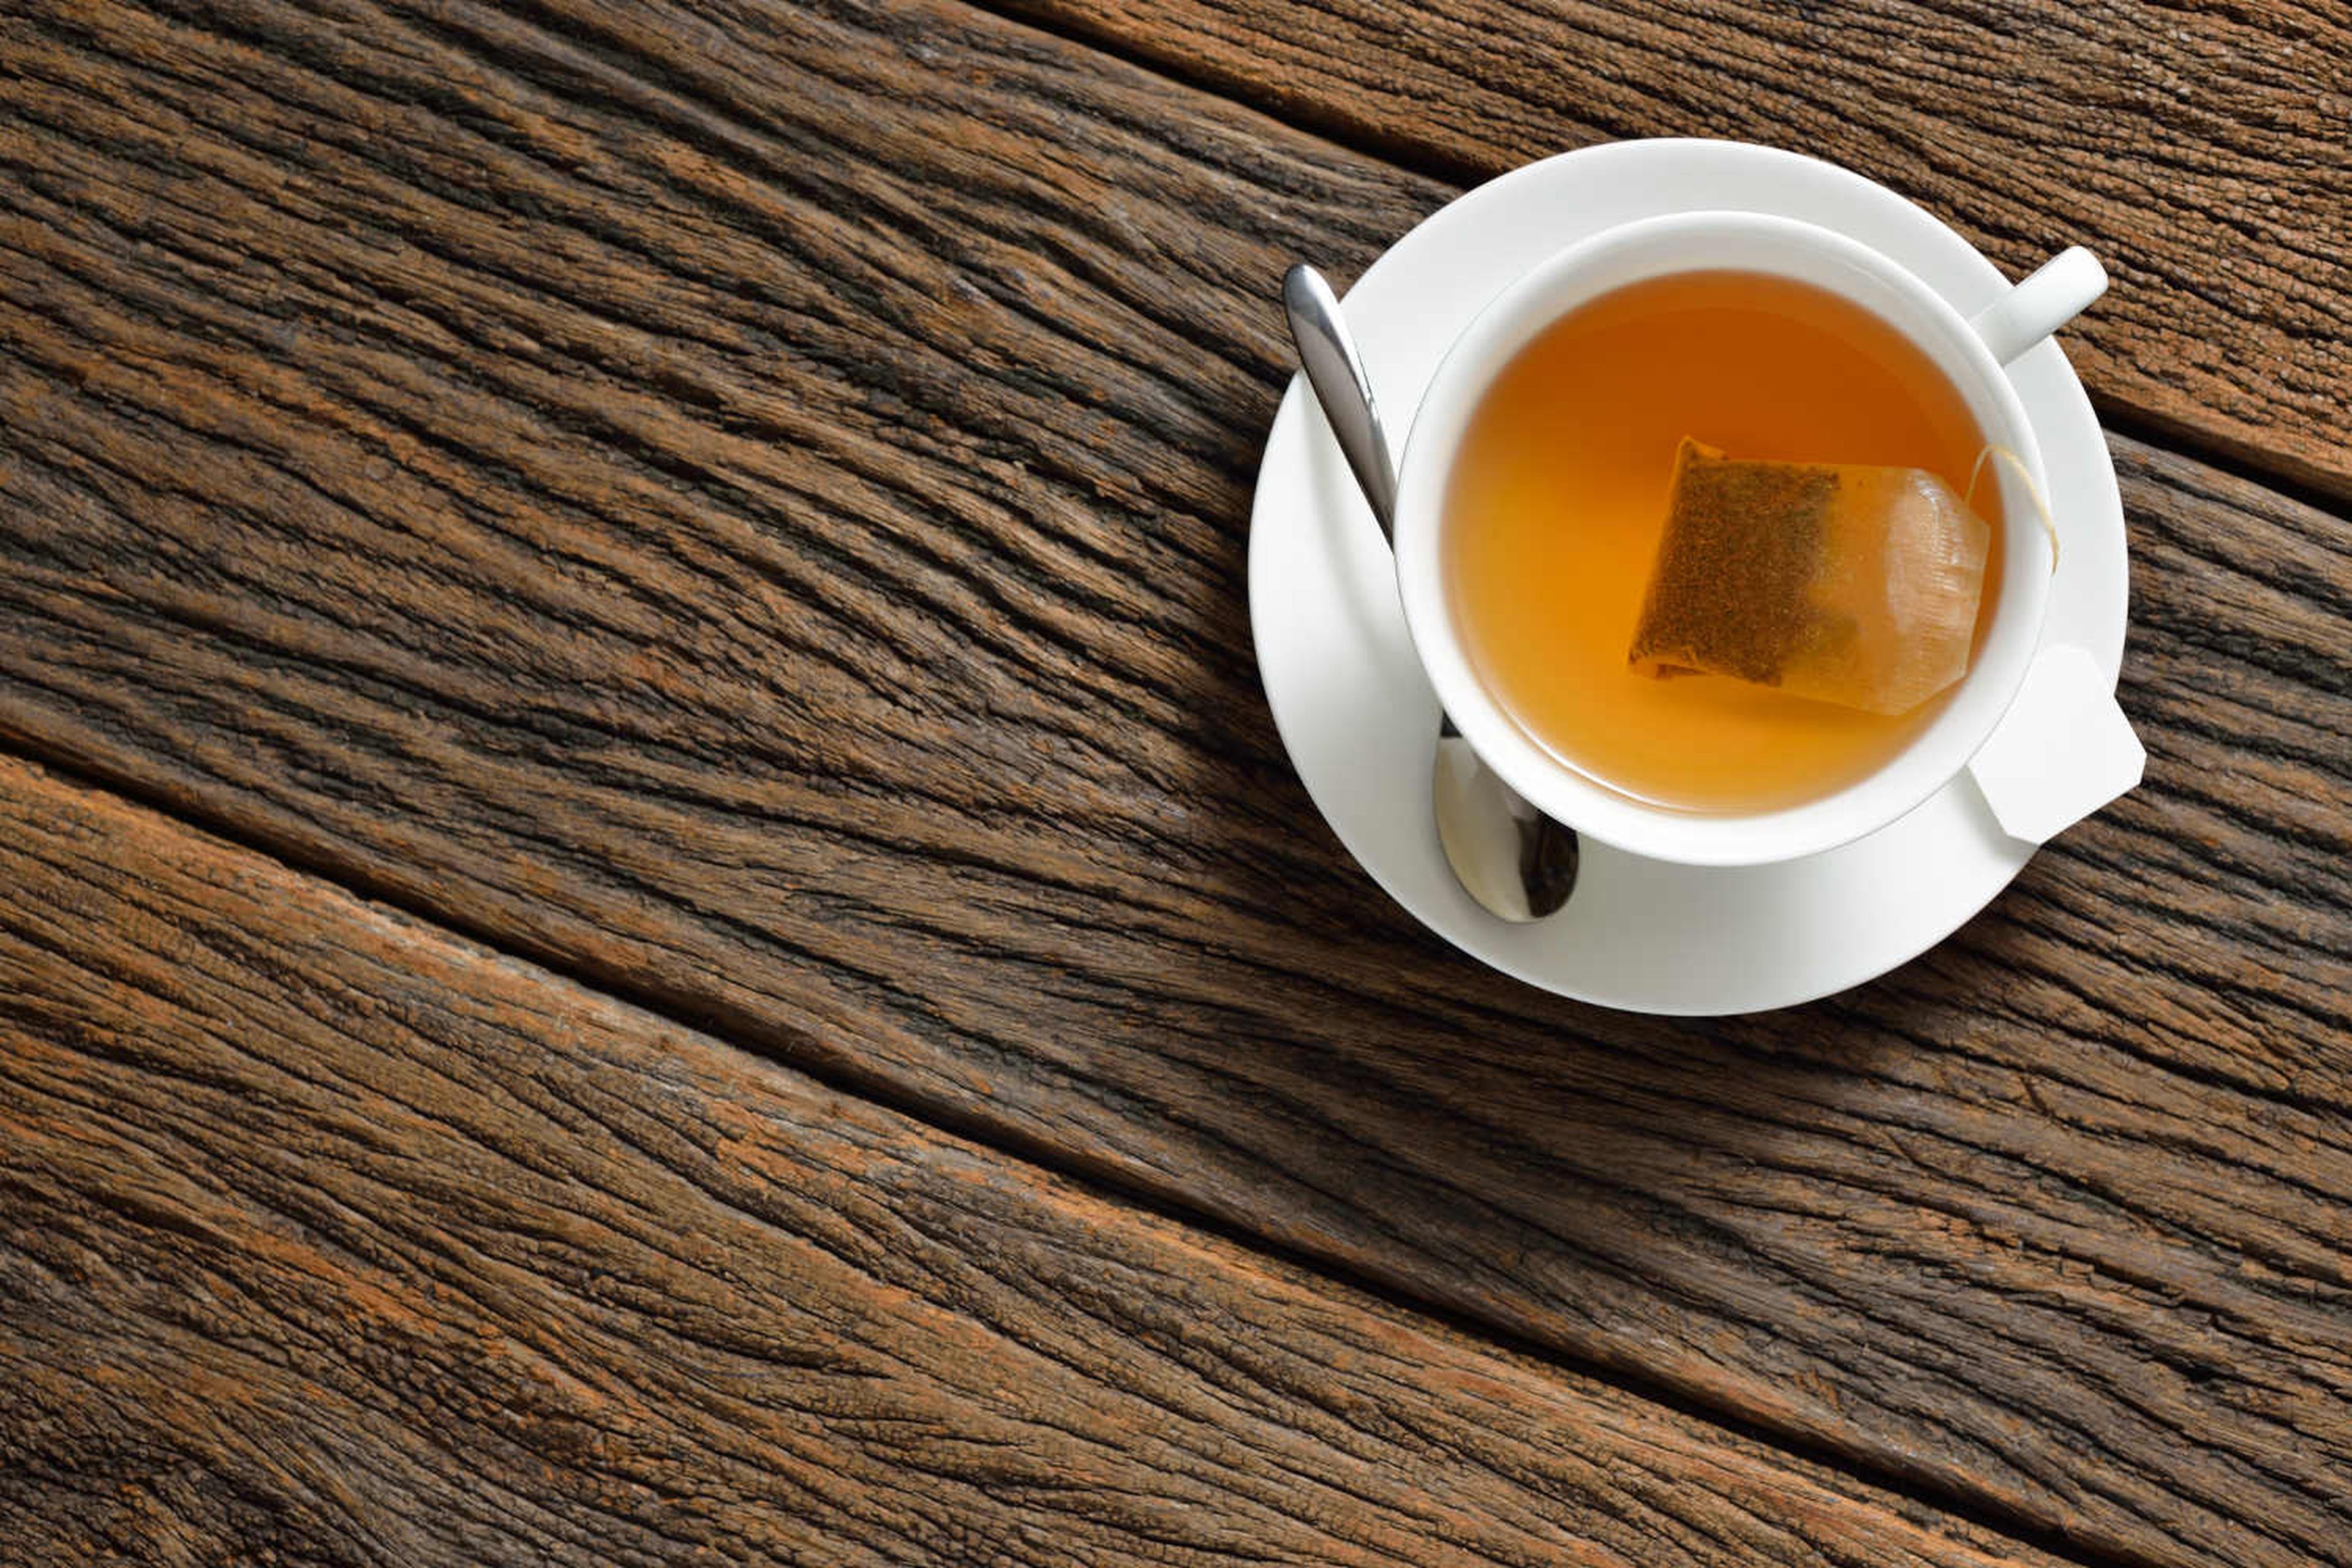 Cuánto tiempo debes dejar la bolsa de té en la taza, según la ciencia